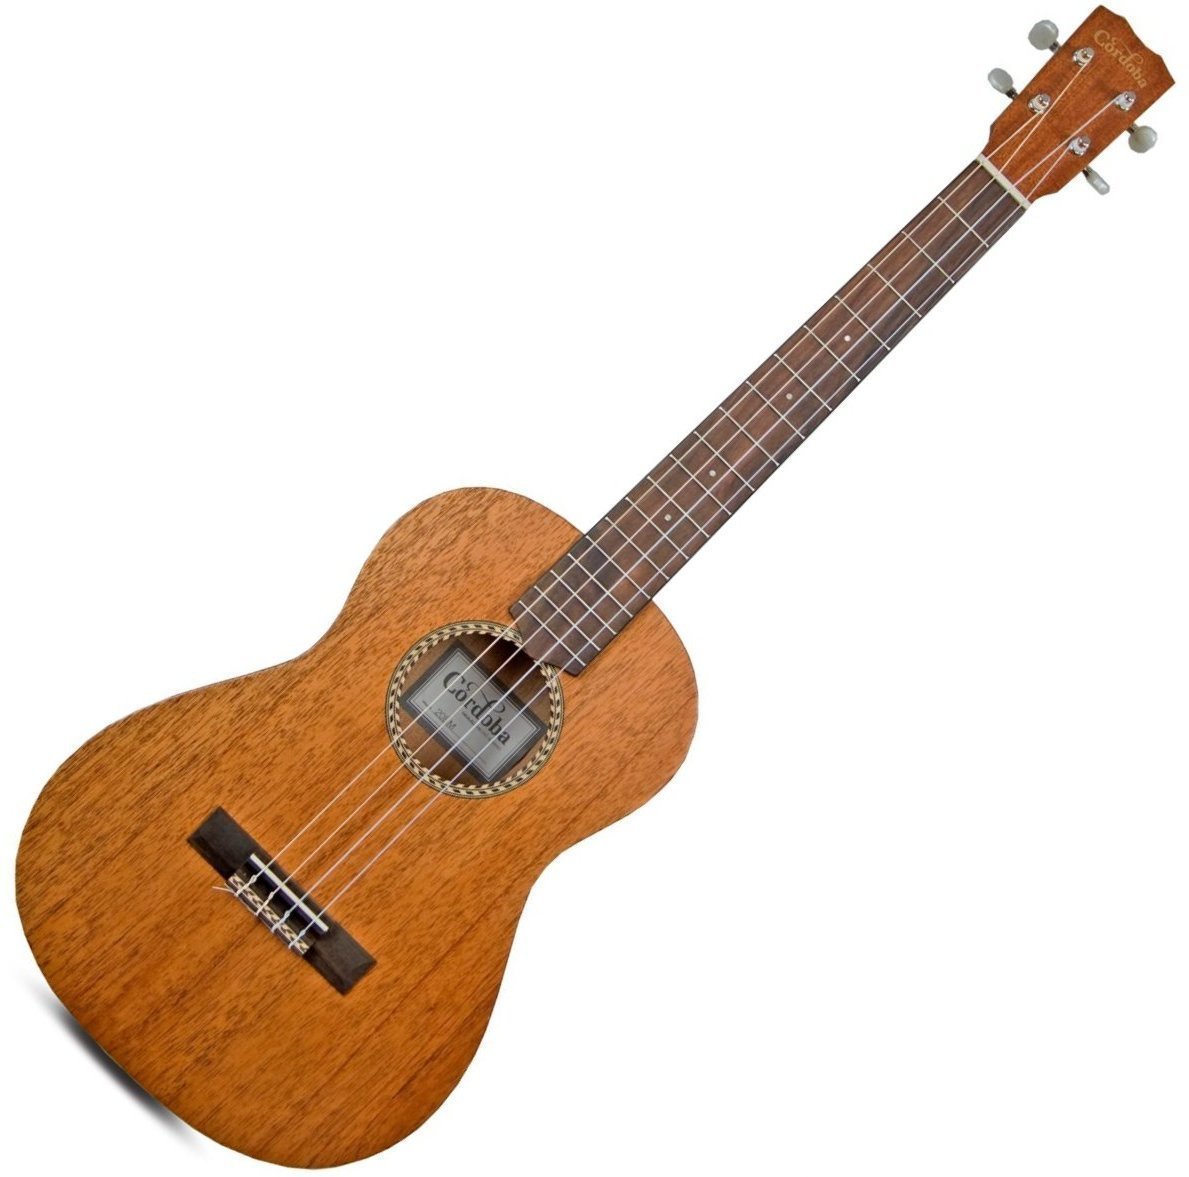 Bariton ukulele Cordoba 20BM Bariton ukulele Natural